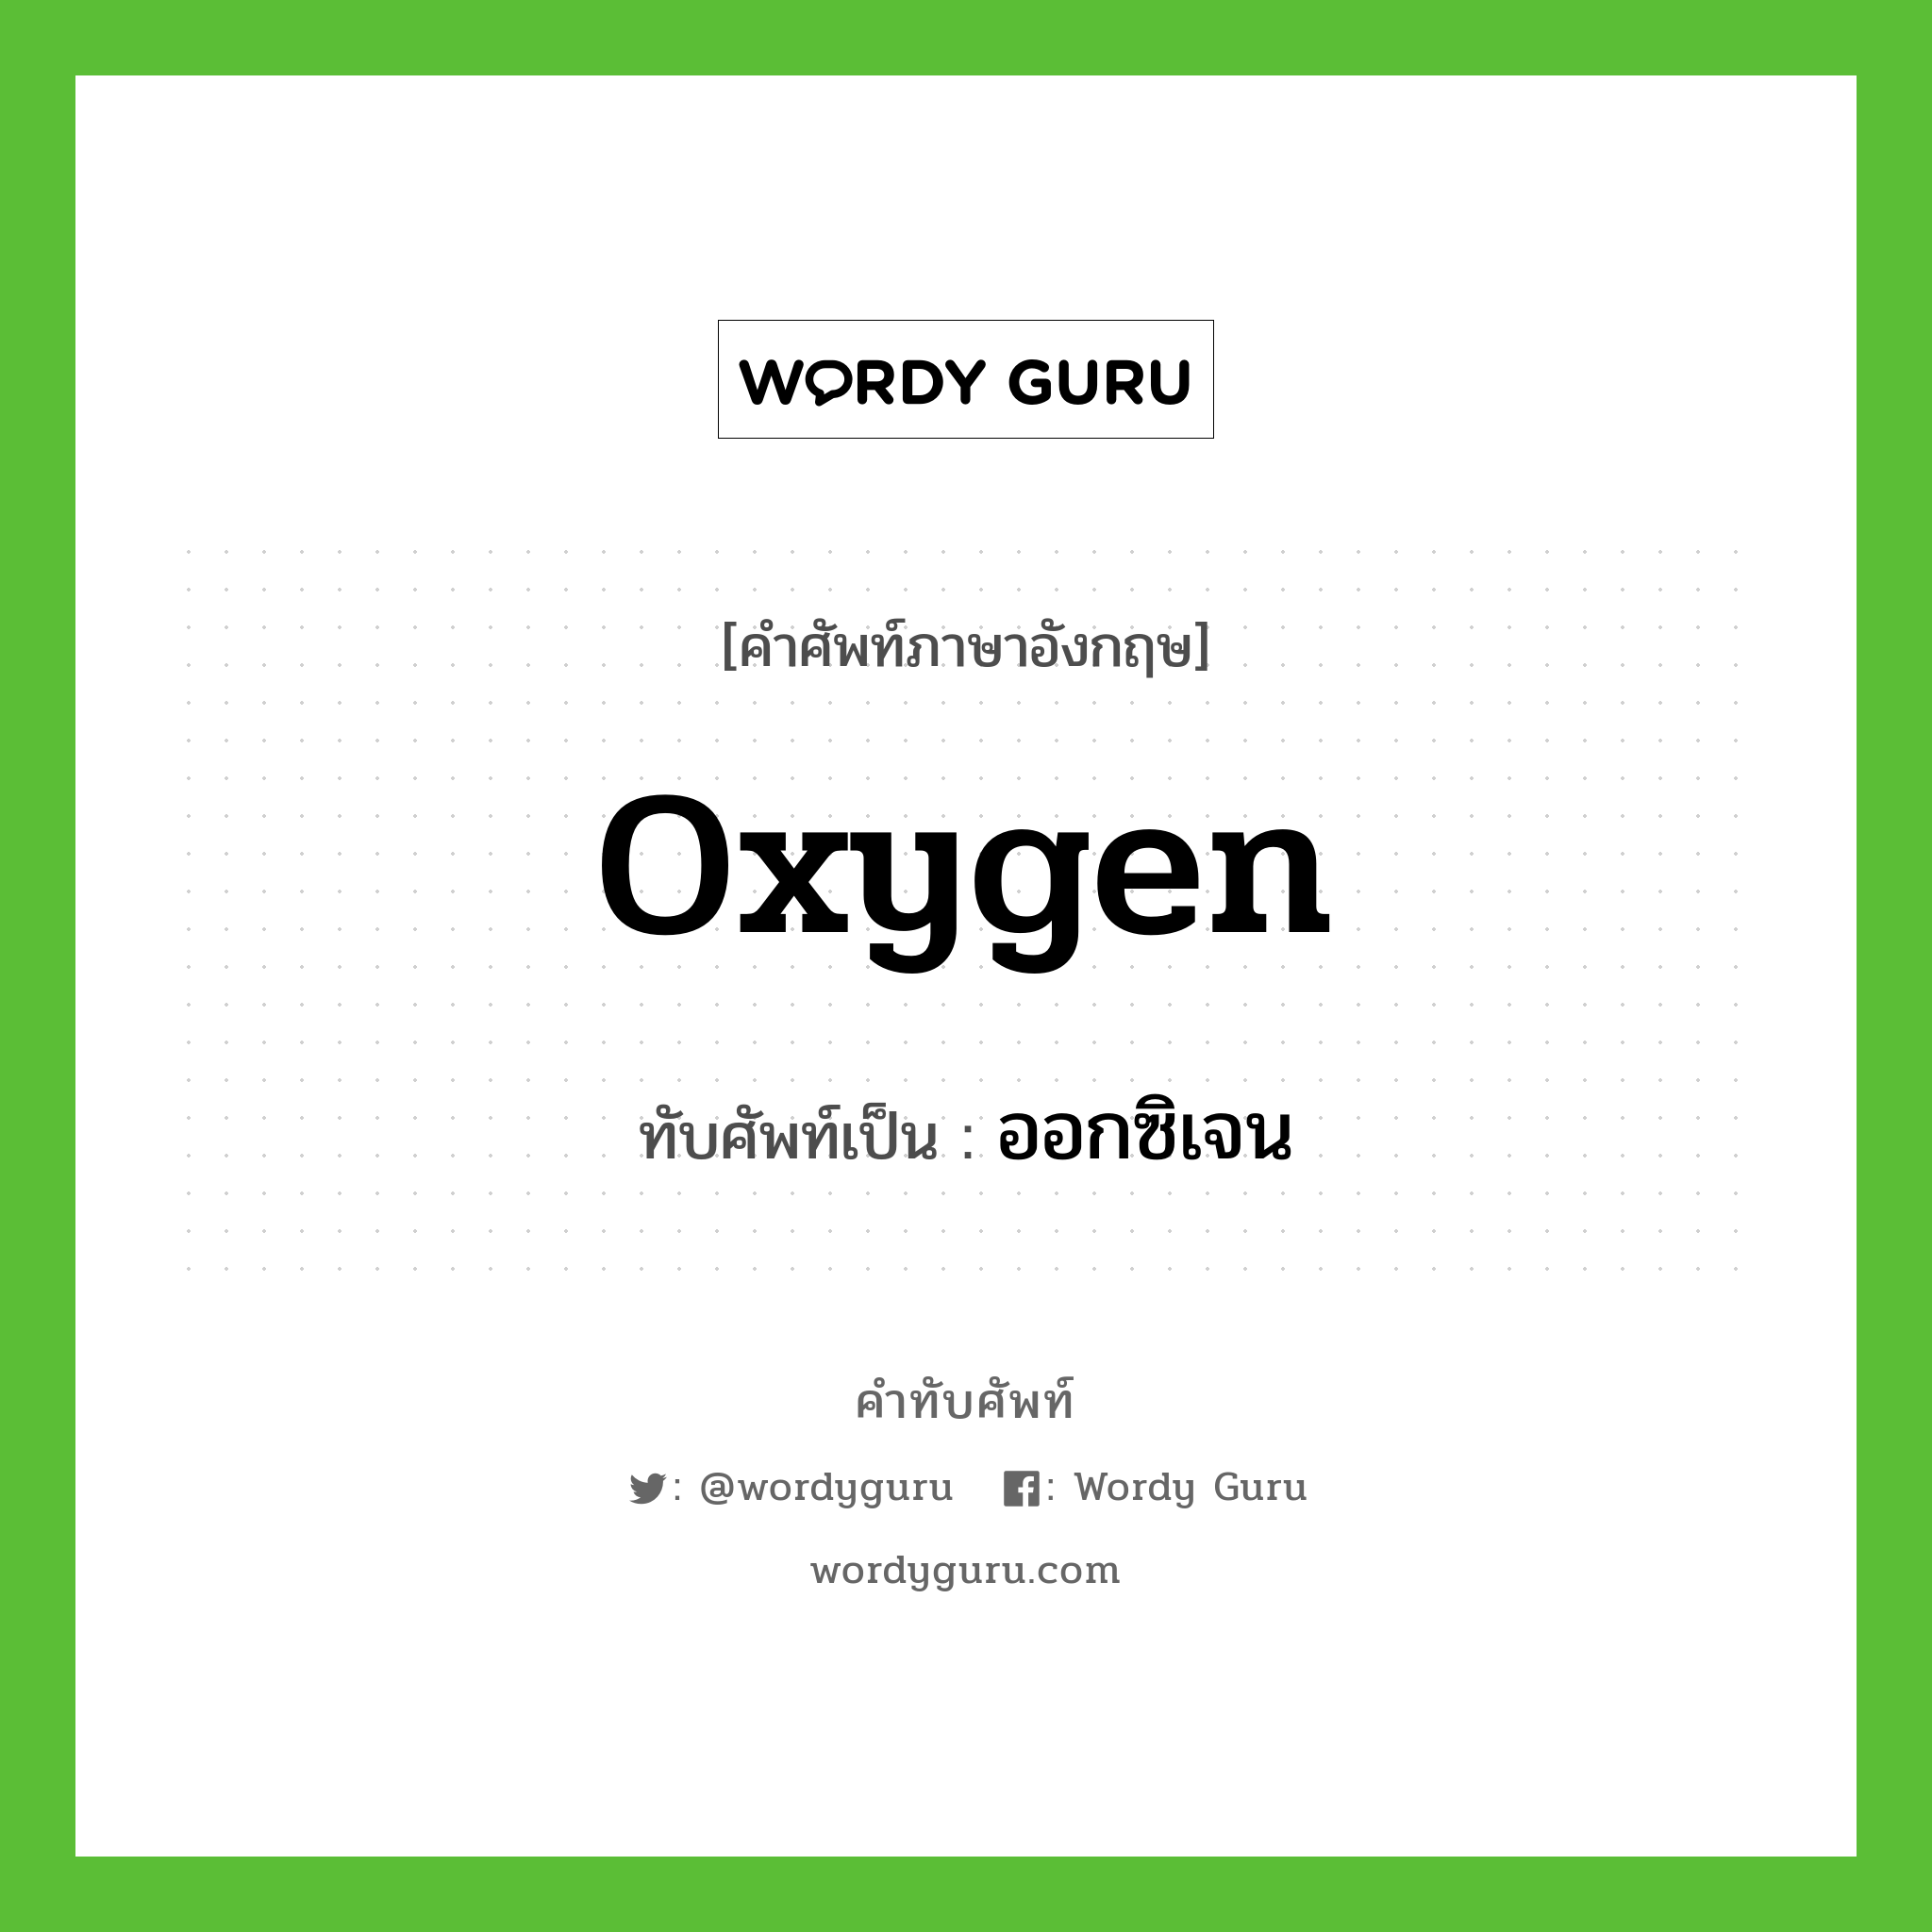 ออกซิเจน เขียนอย่างไร?, คำศัพท์ภาษาอังกฤษ ออกซิเจน ทับศัพท์เป็น oxygen